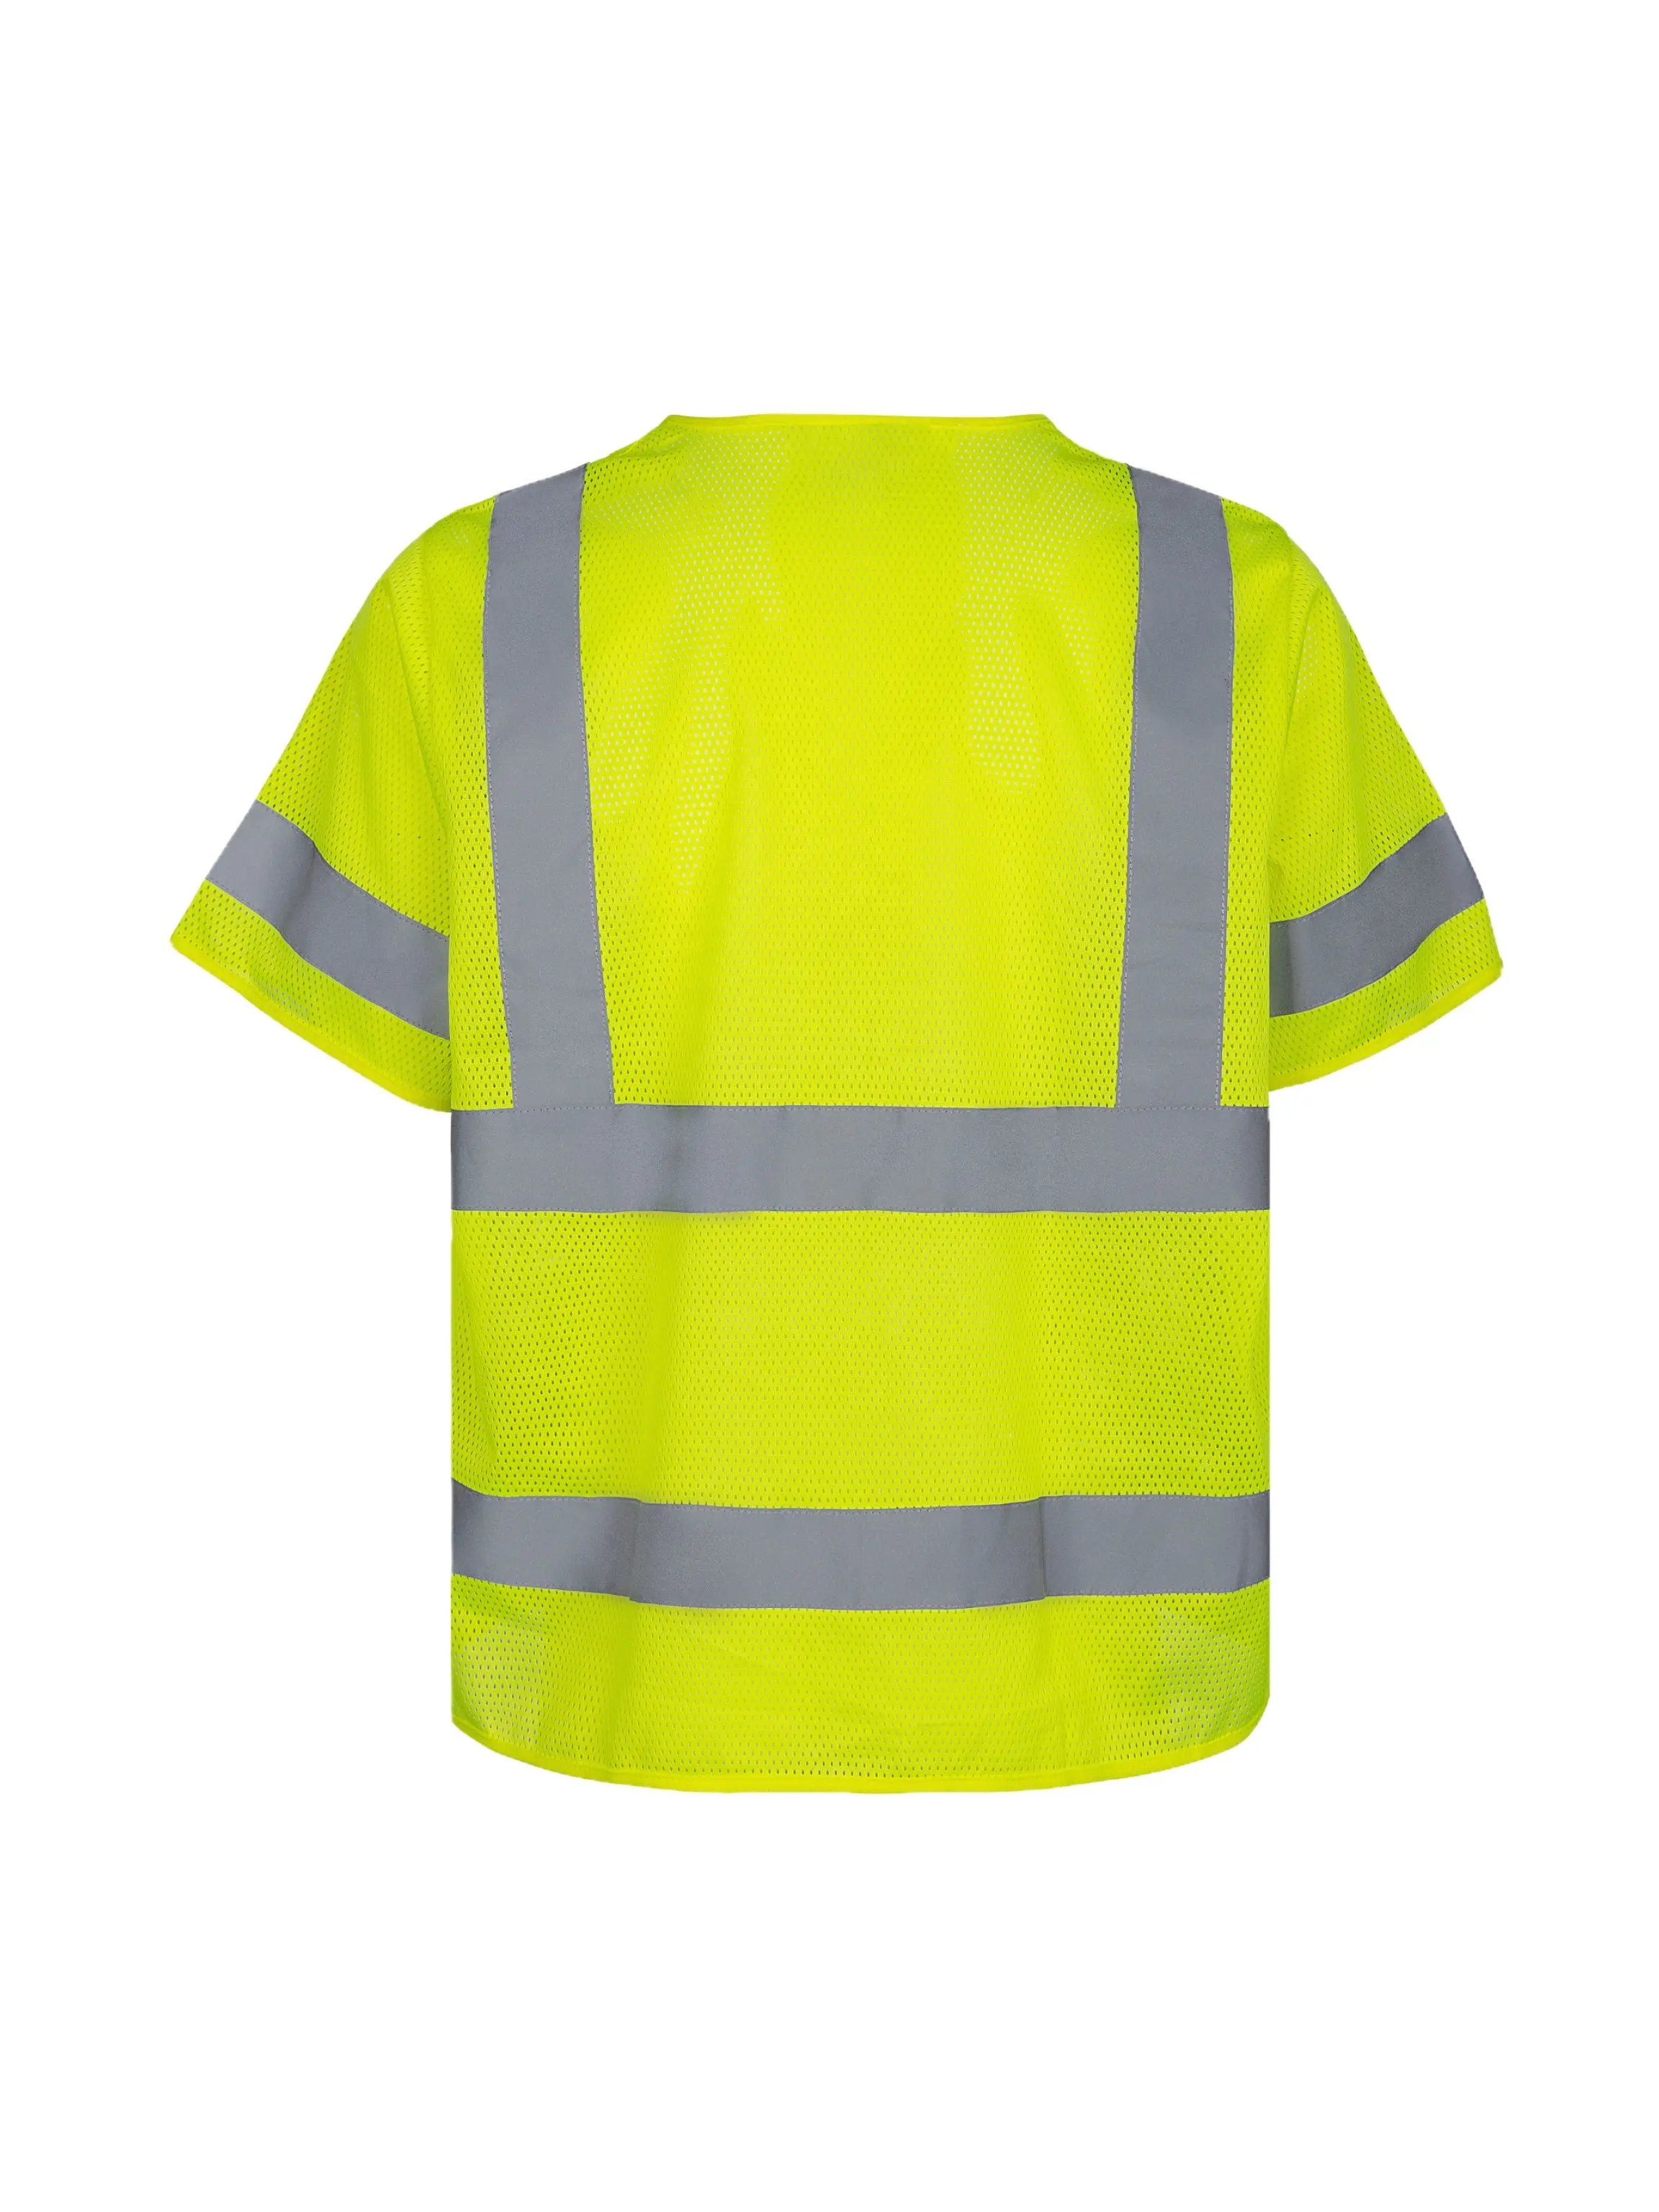 Abbigliamento ad alta visibilità costruzione abbigliamento da lavoro protezione di sicurezza per esterni ansi classe 3 OEM gilet di sicurezza industriale ad alta riflessione